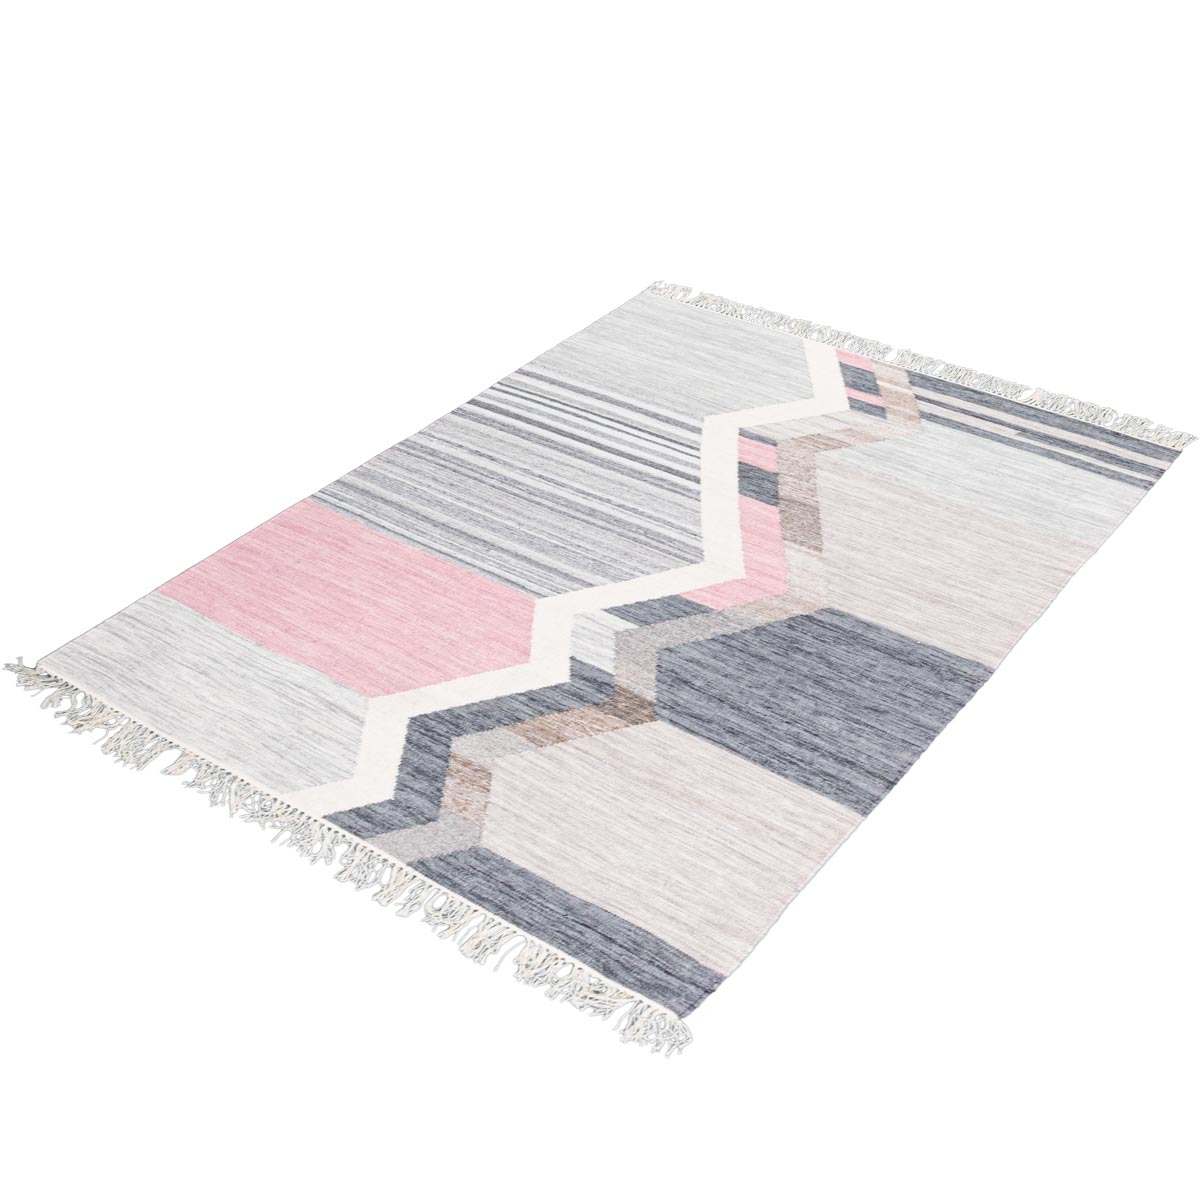 שטיח קילים סקנדינבי 18 כחול/ורוד/אפור עם פרנזים | השטיח האדום